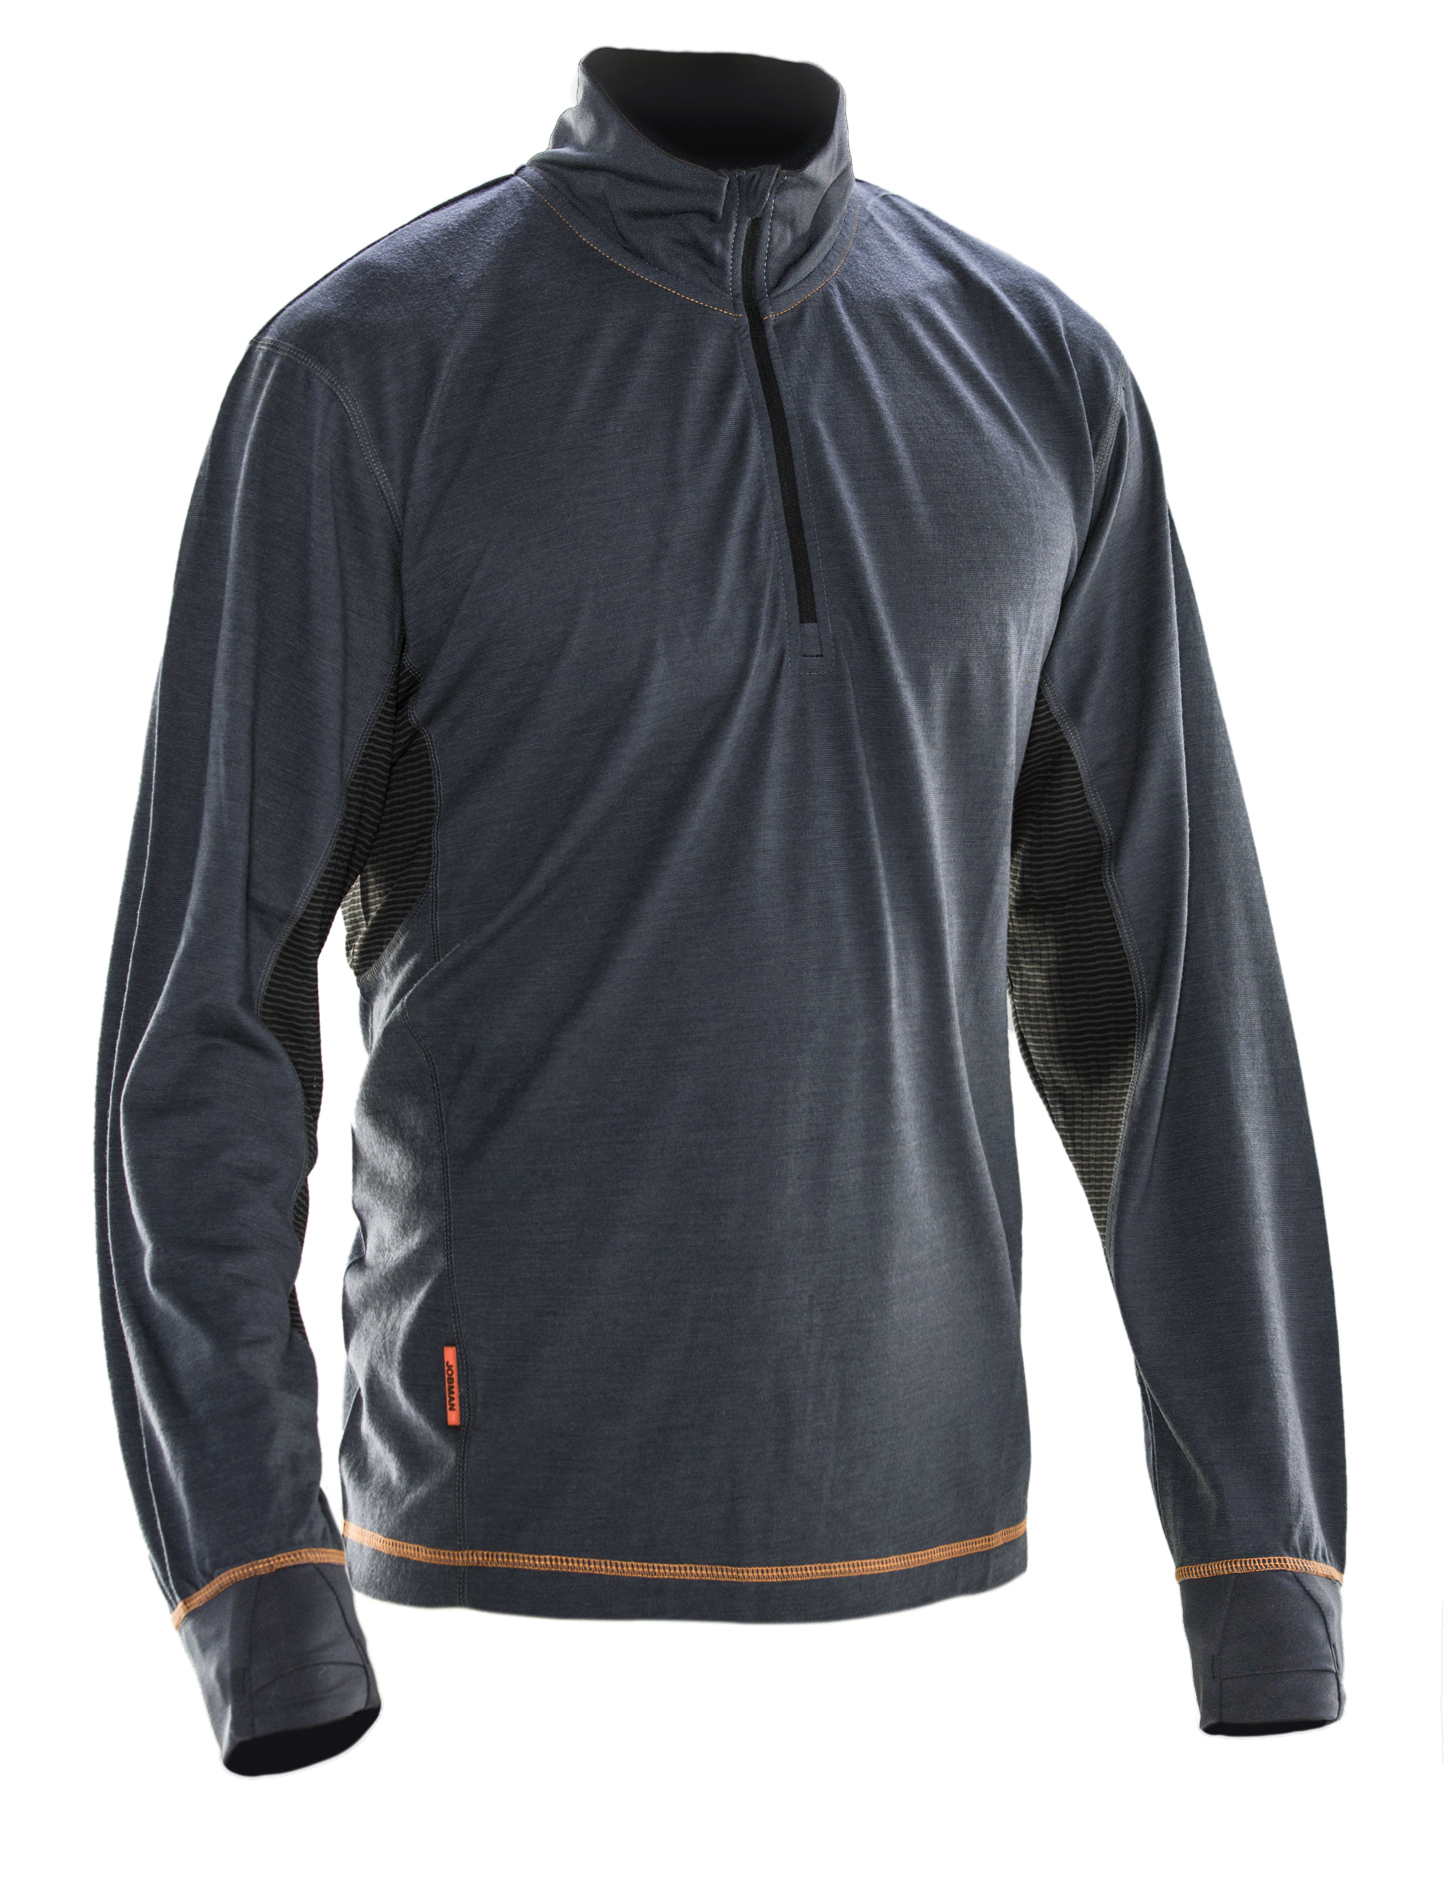 5596 Sweatshirt Dry-tech™ en laine mérinos S gris foncé/noir